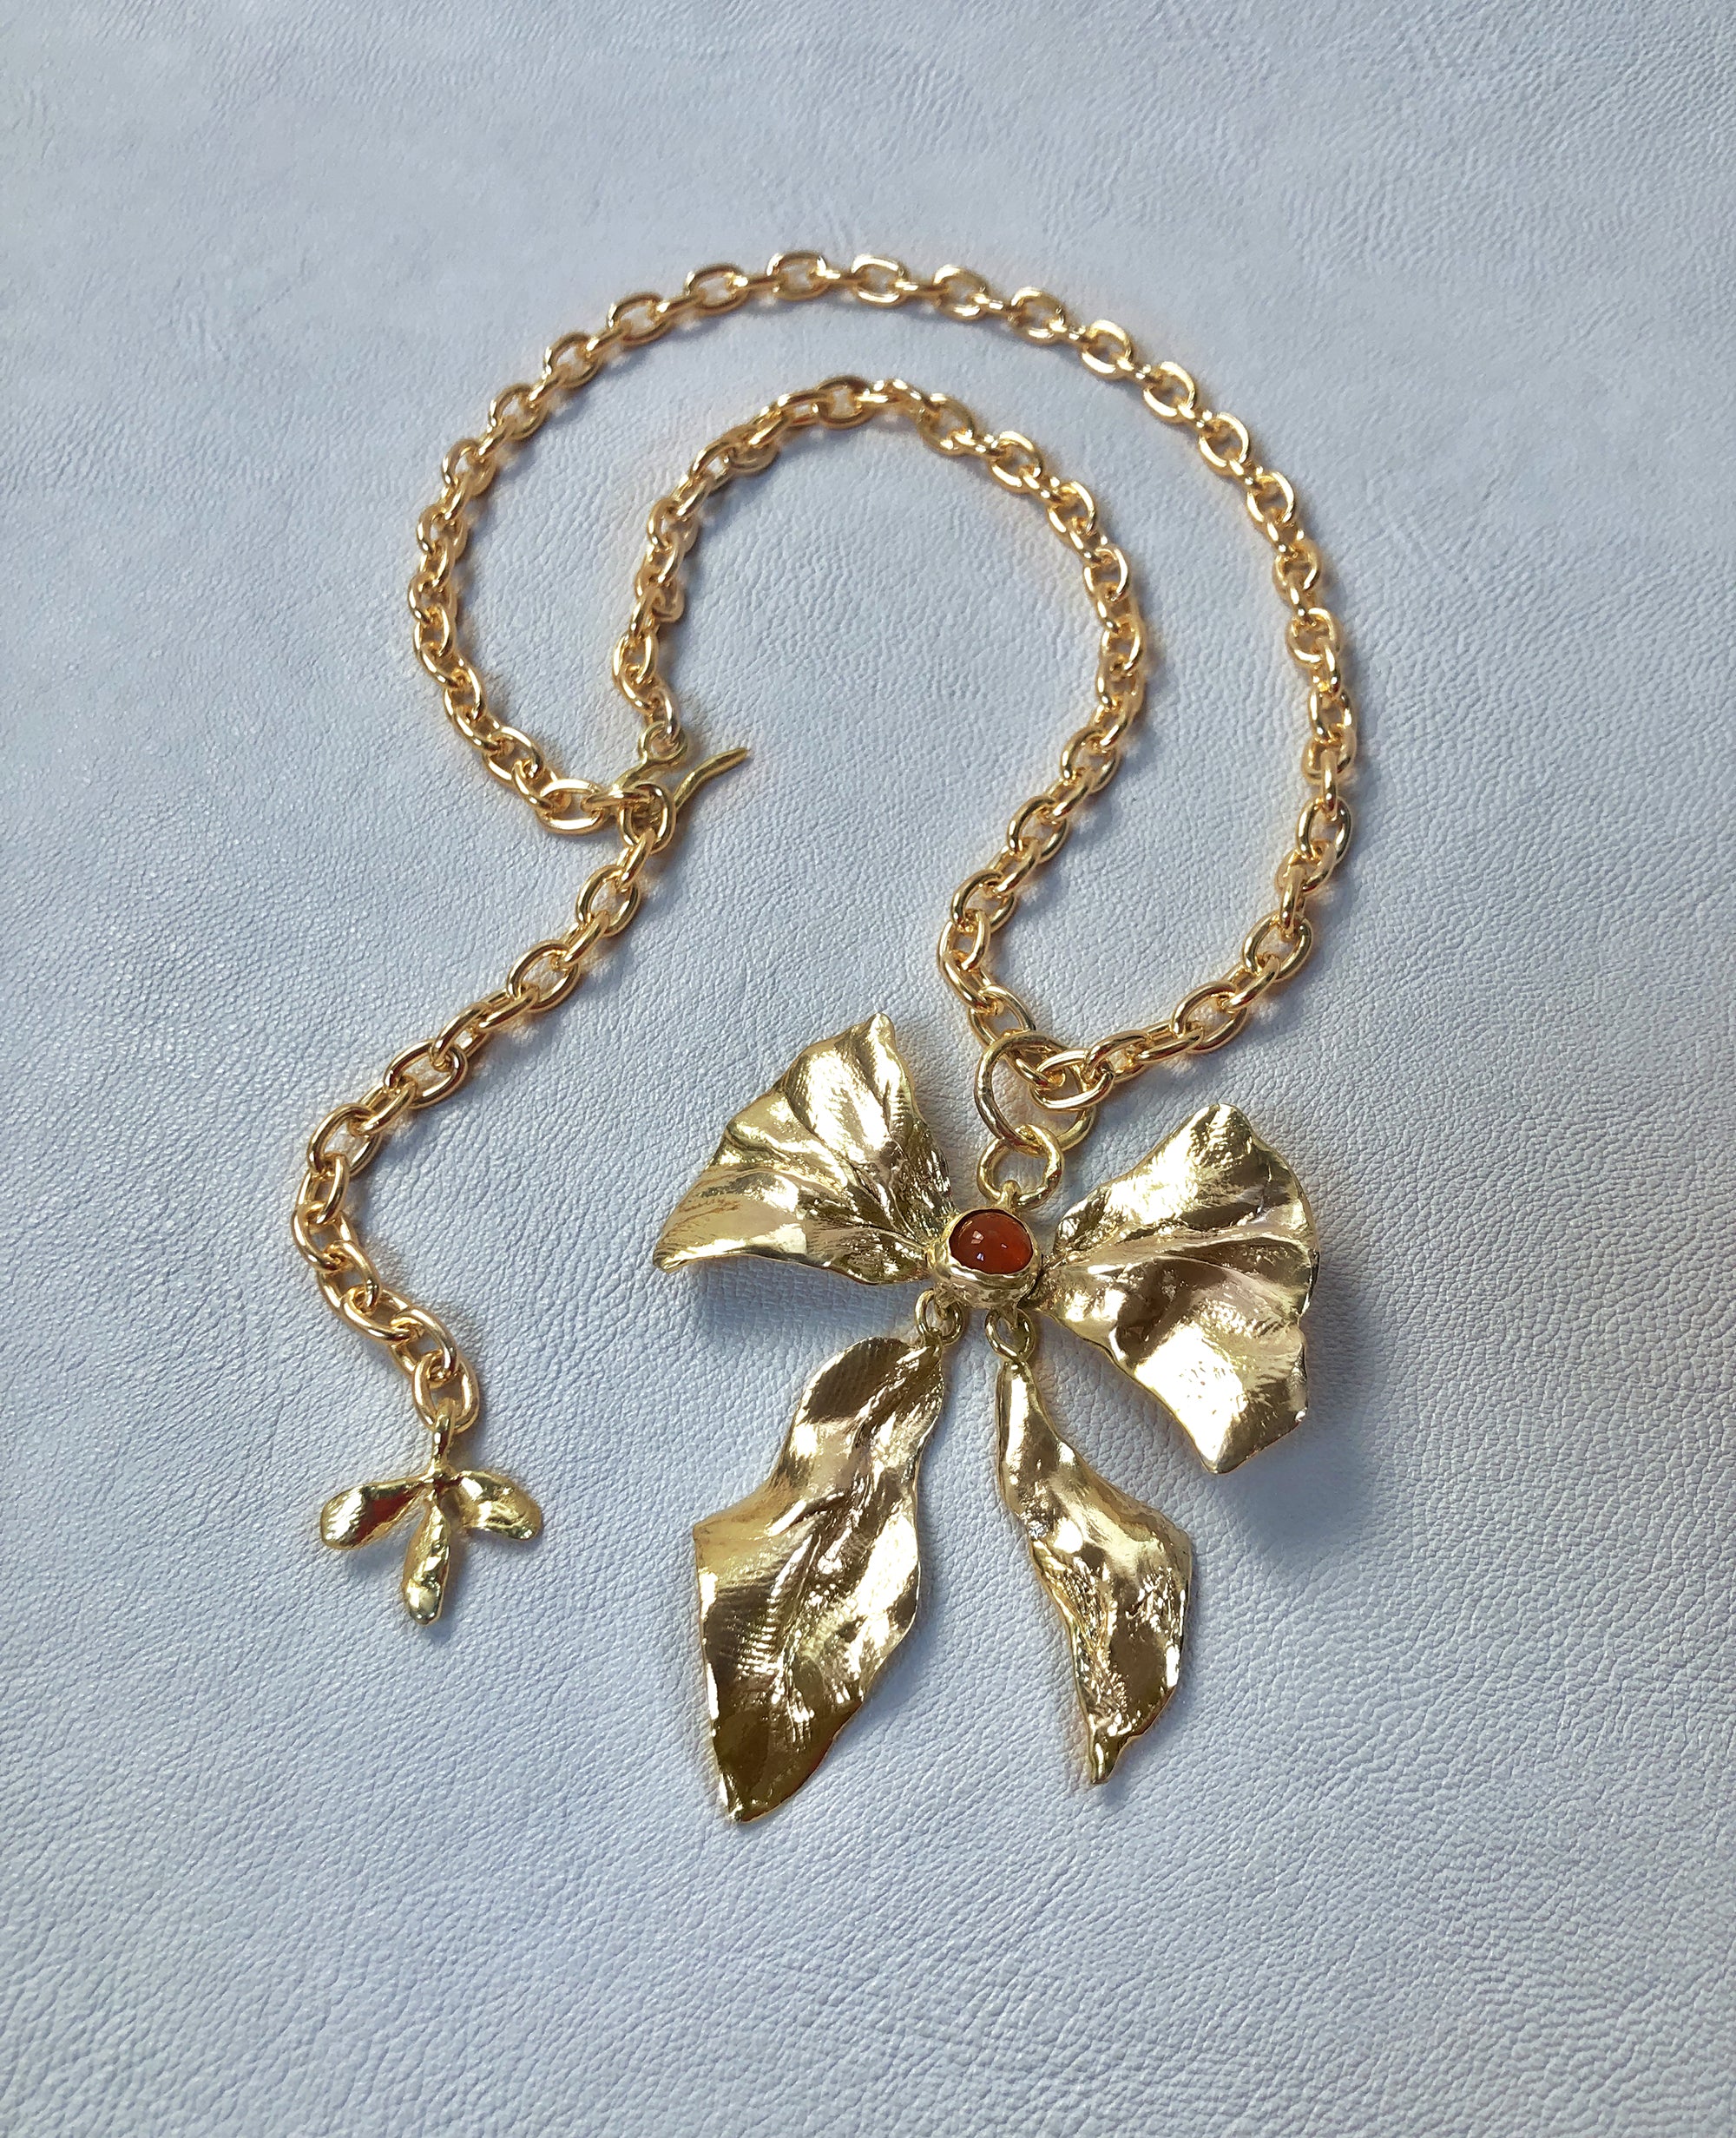 REIGN BOW // collier avec cornaline - ORA-C jewelry - bijoux faits main par Caroline Pham, designer indépendante basée à Montréal